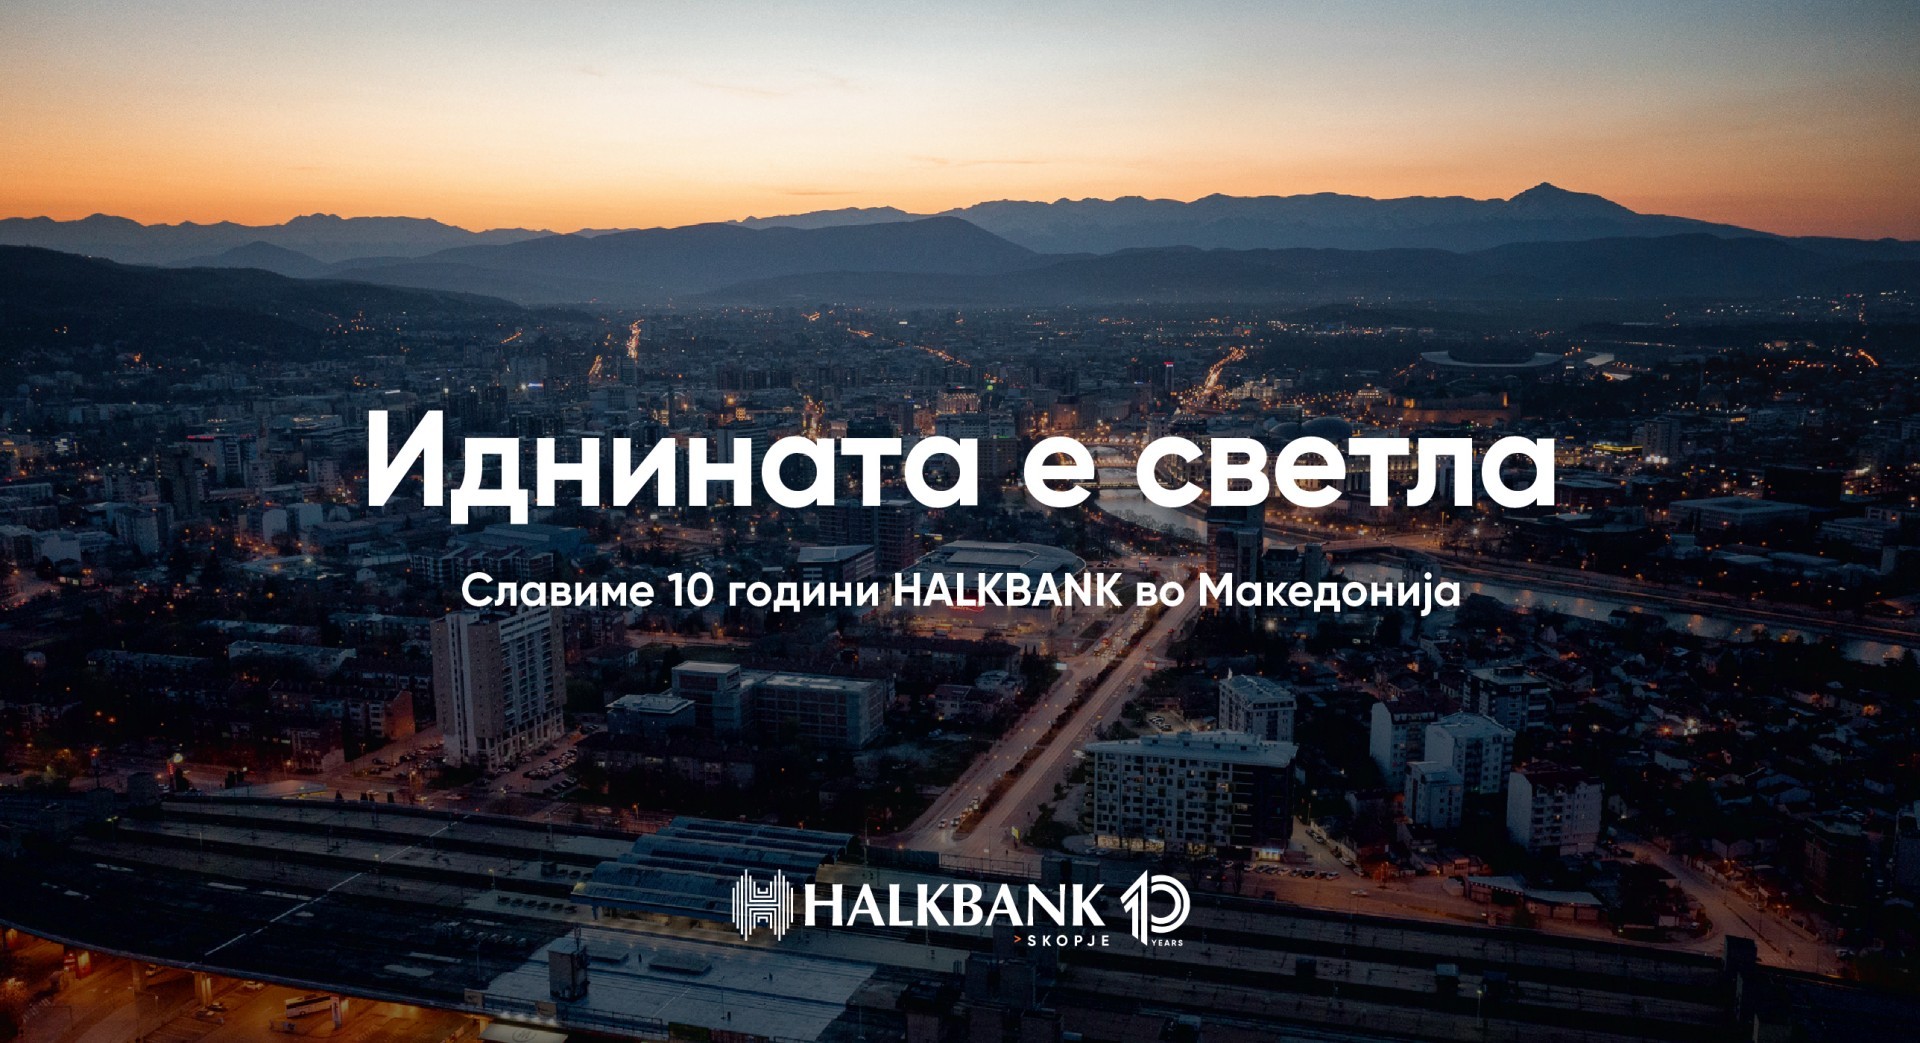 Славиме 10 успешни години на македонскиот пазар и целиме кон уште посветла заедничка иднина